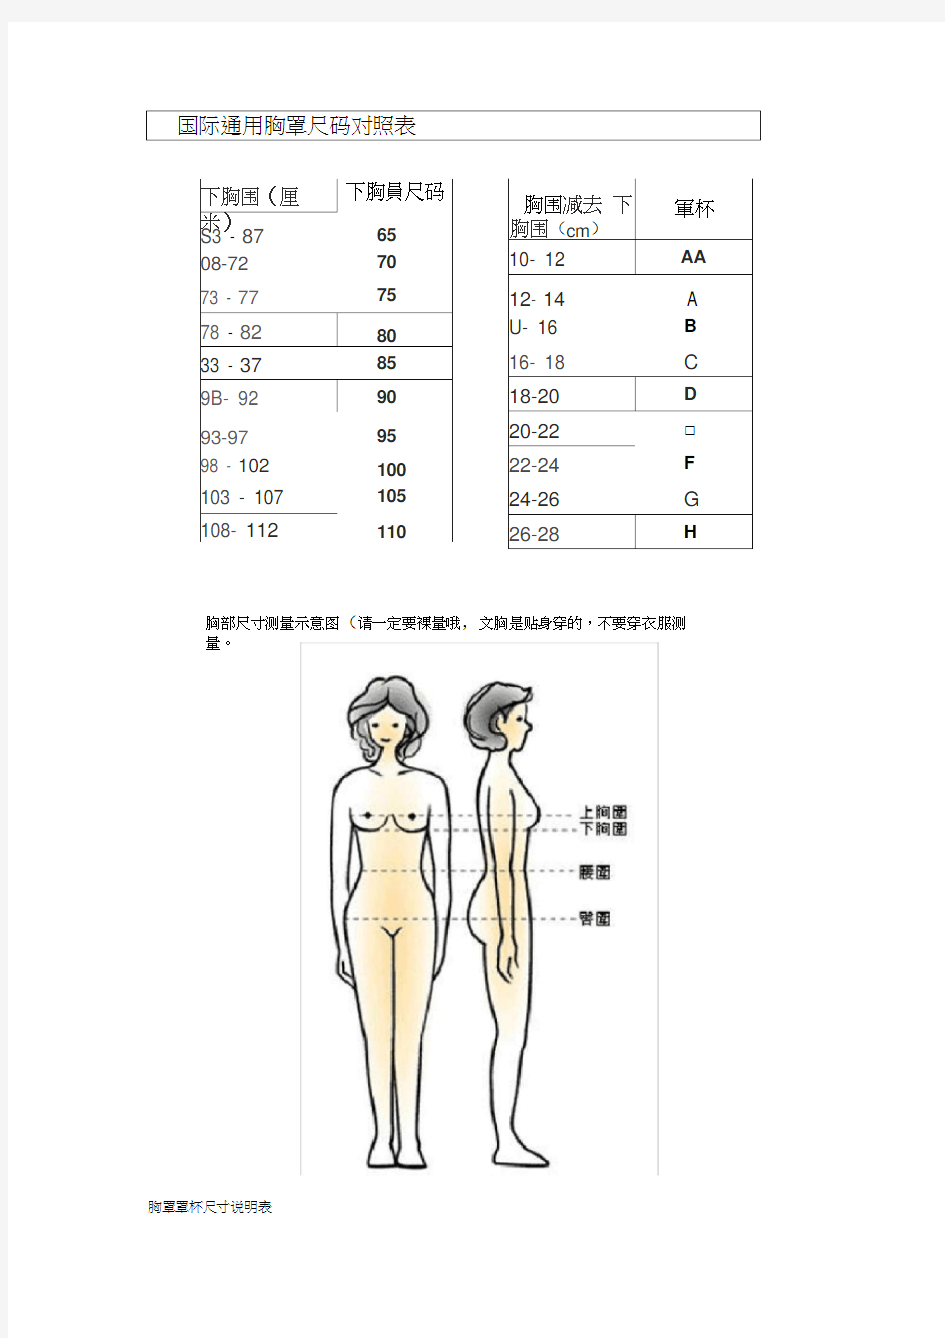 国际通用胸罩尺码对照表-与其他(20210131113607)